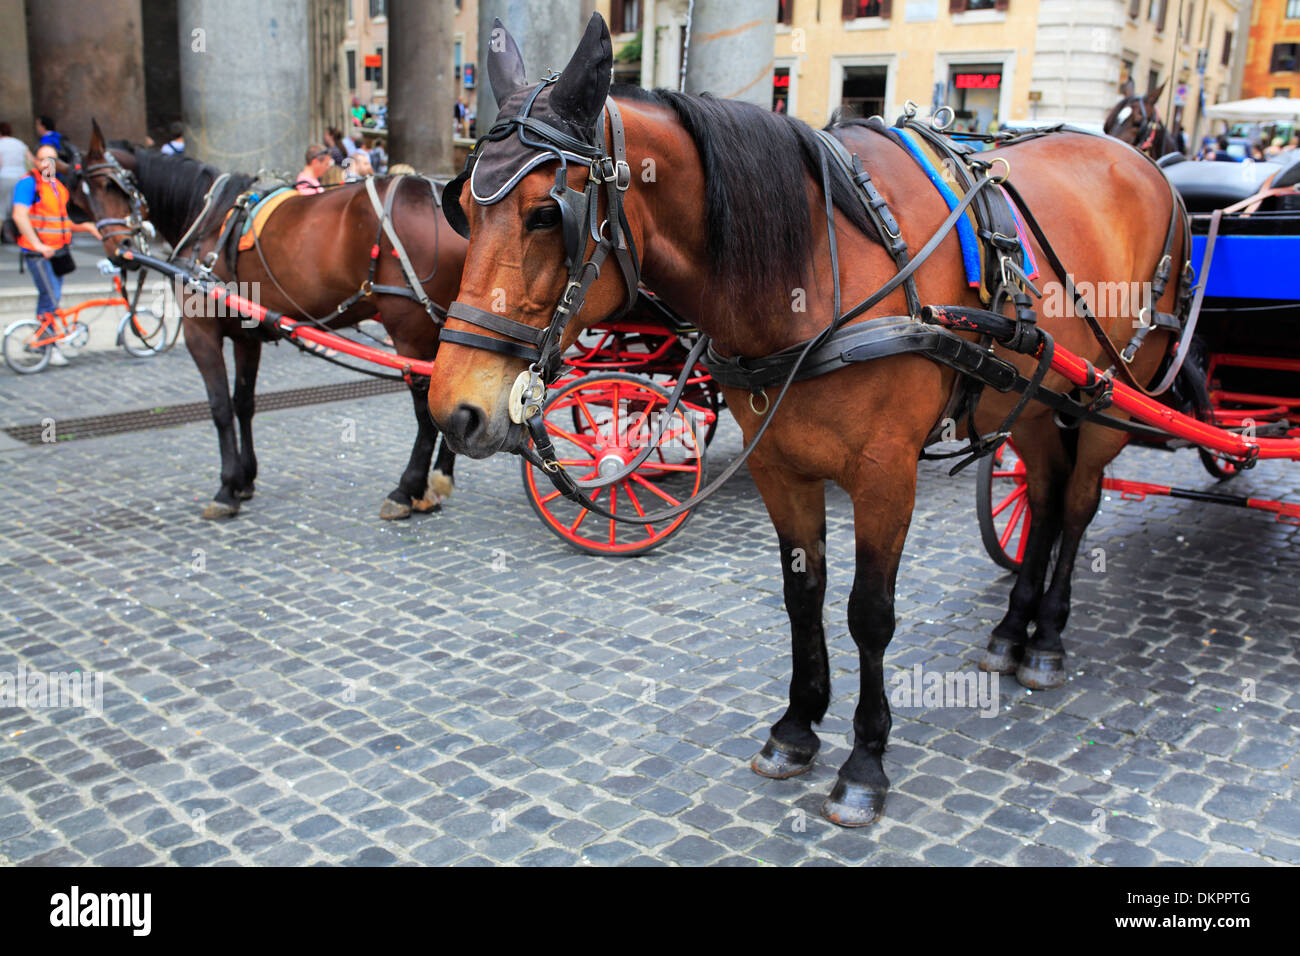 Horses on Piazza della Rotonda, Rome, Italy Stock Photo